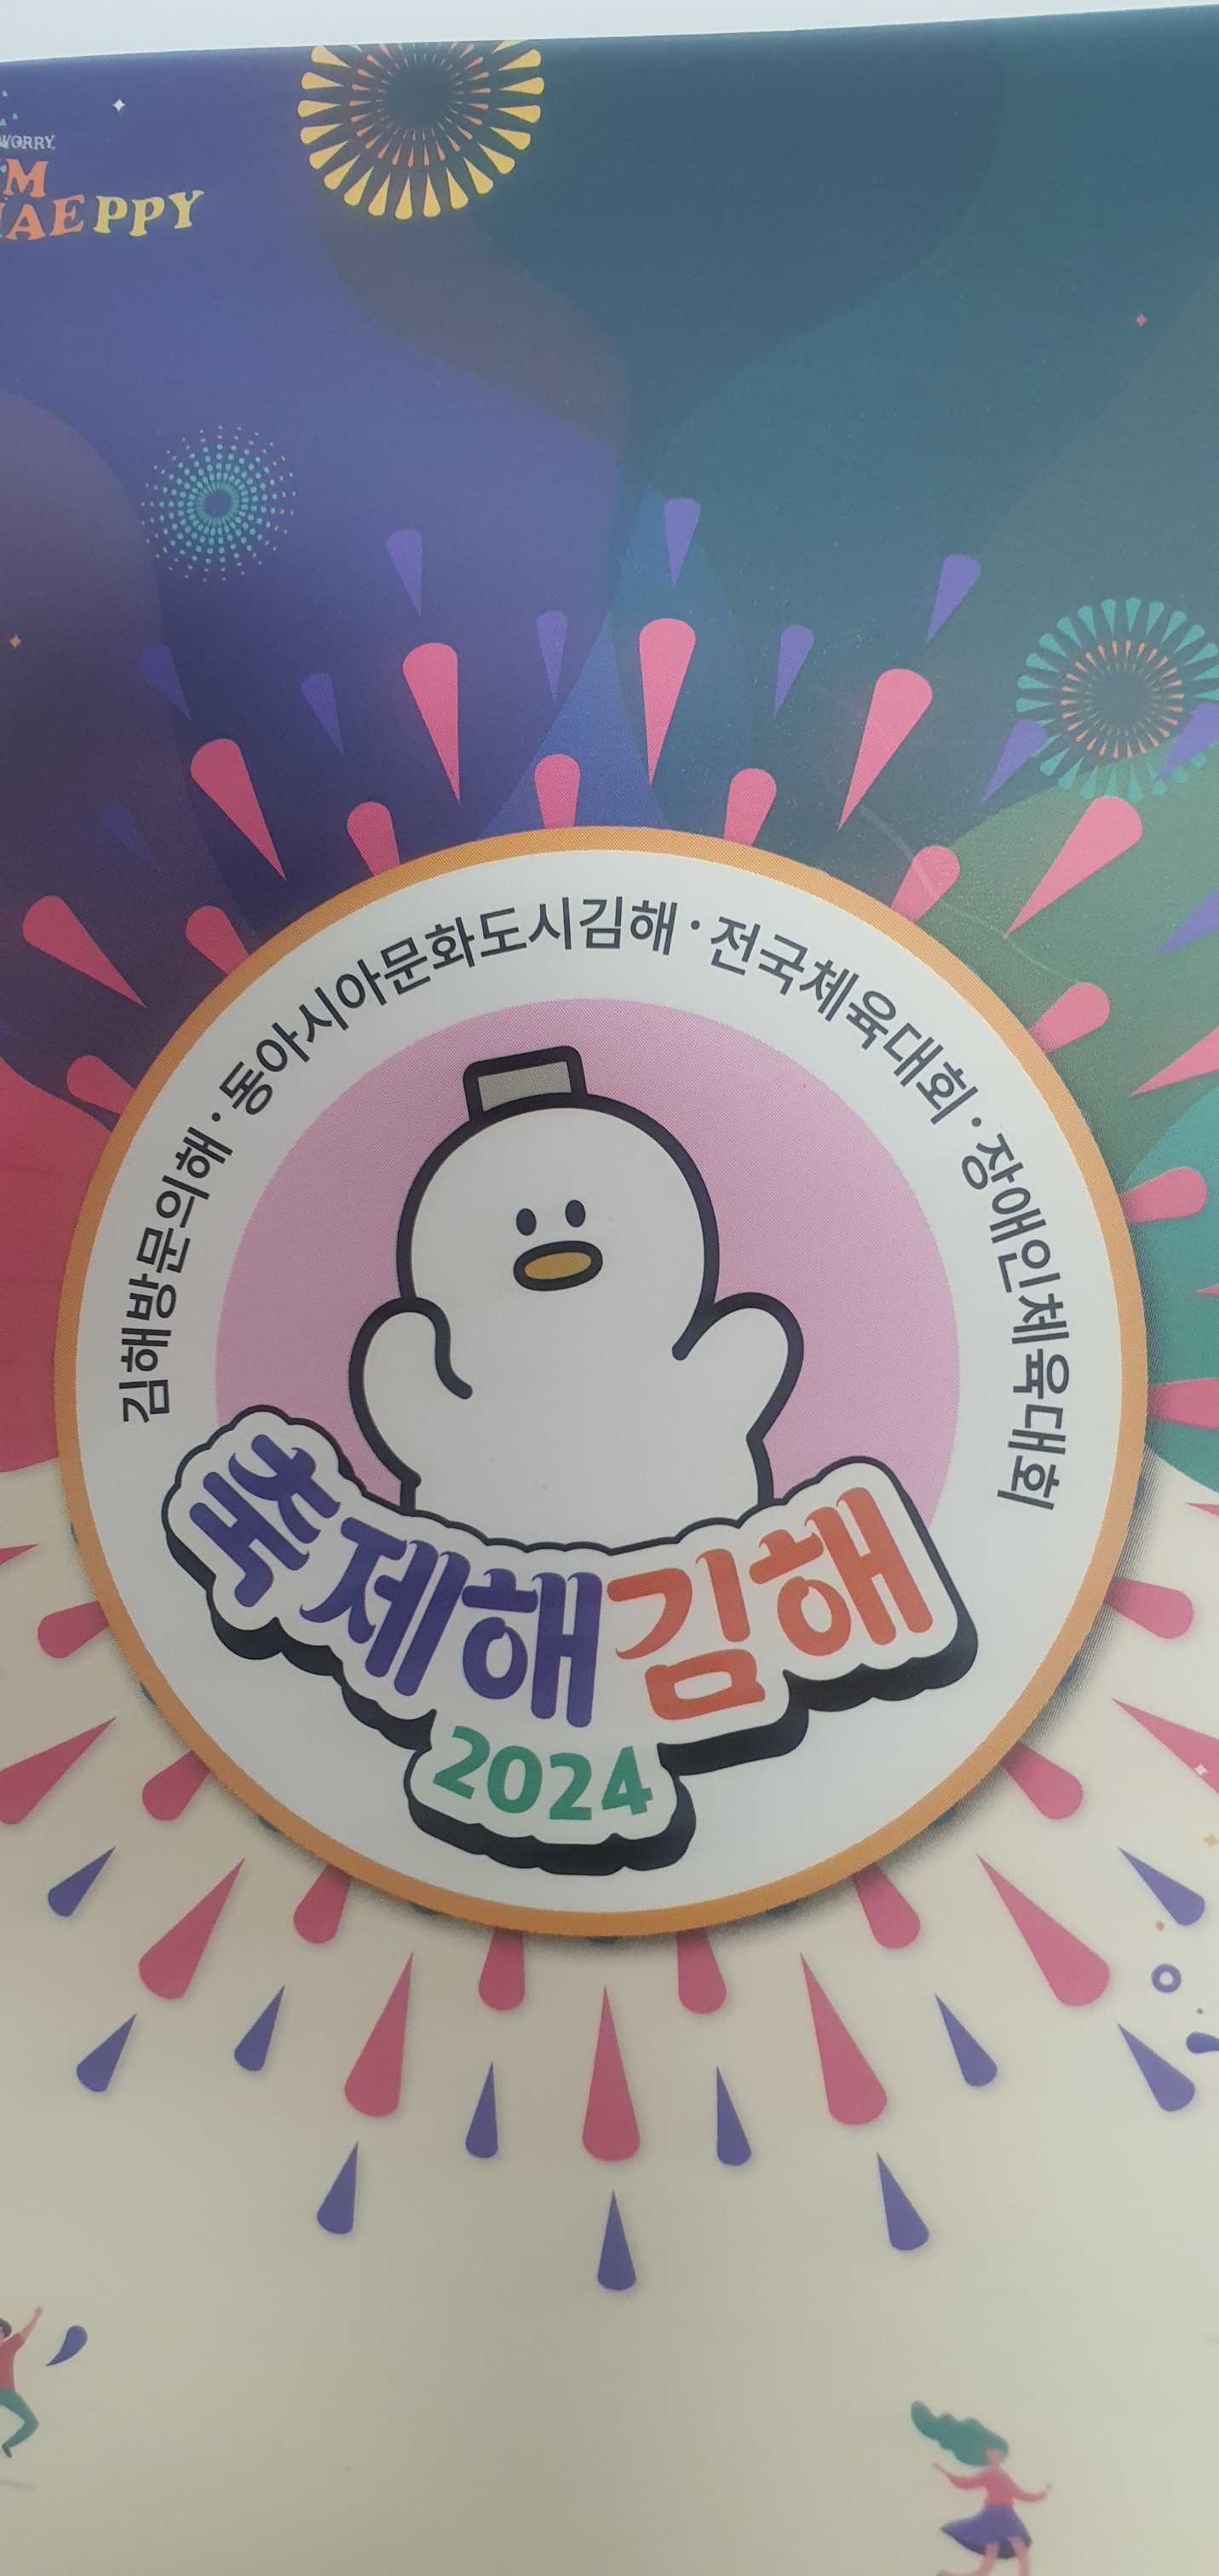 김해시 메가이벤트 참여 성공 기원